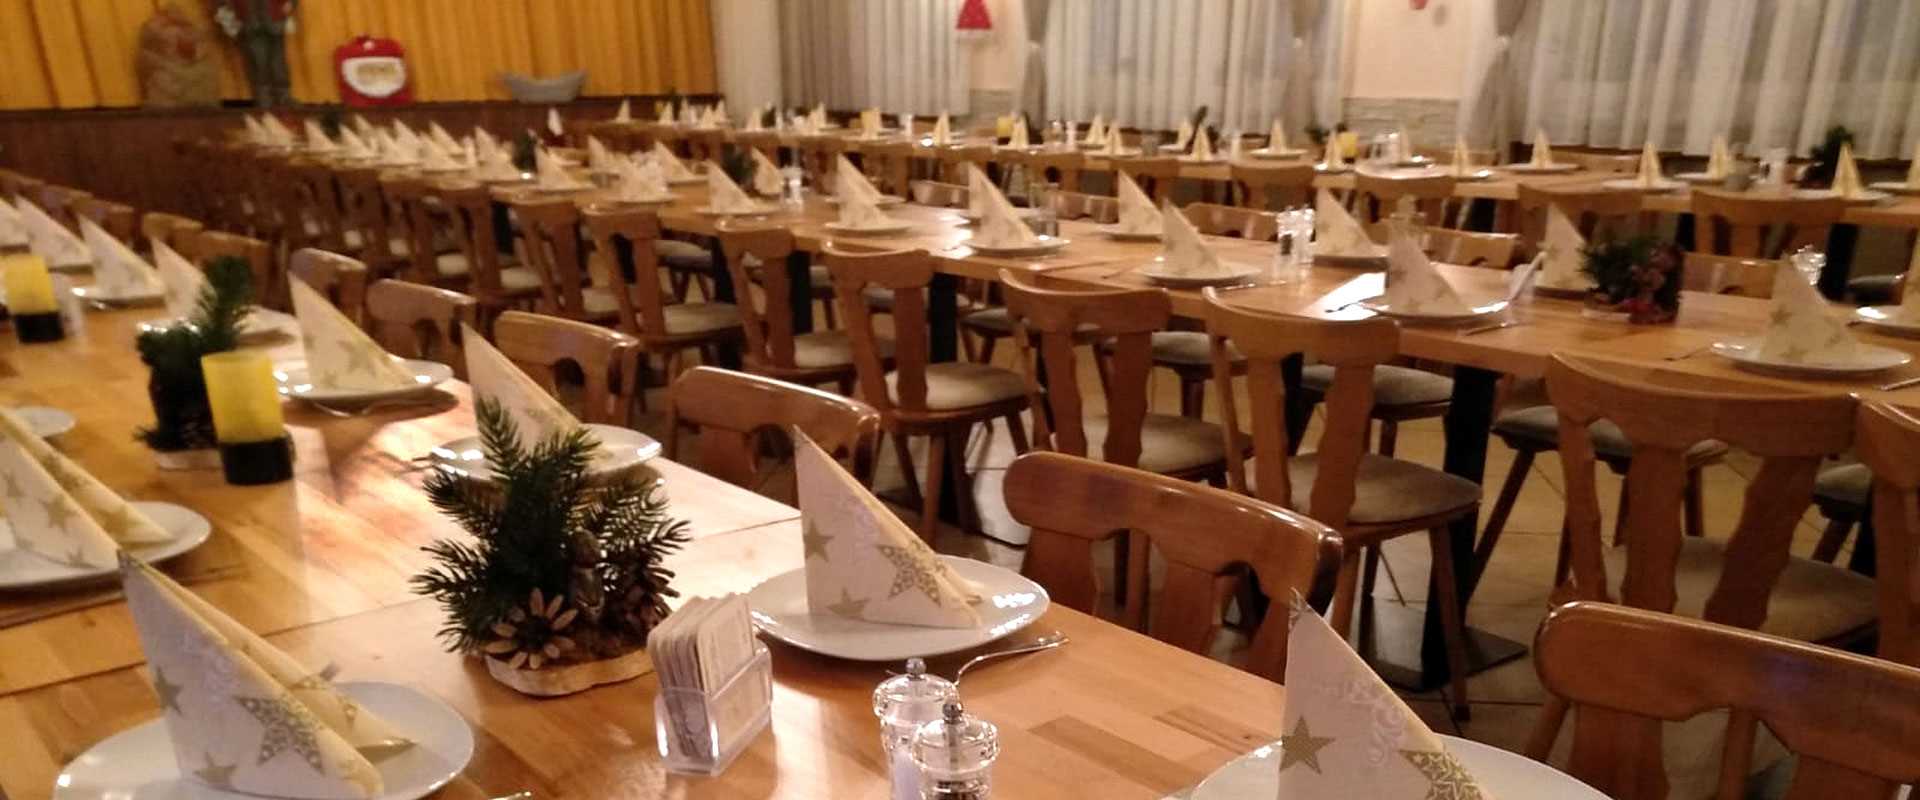 Griechisches Restaurant Naturfreundehaus in Speyer0